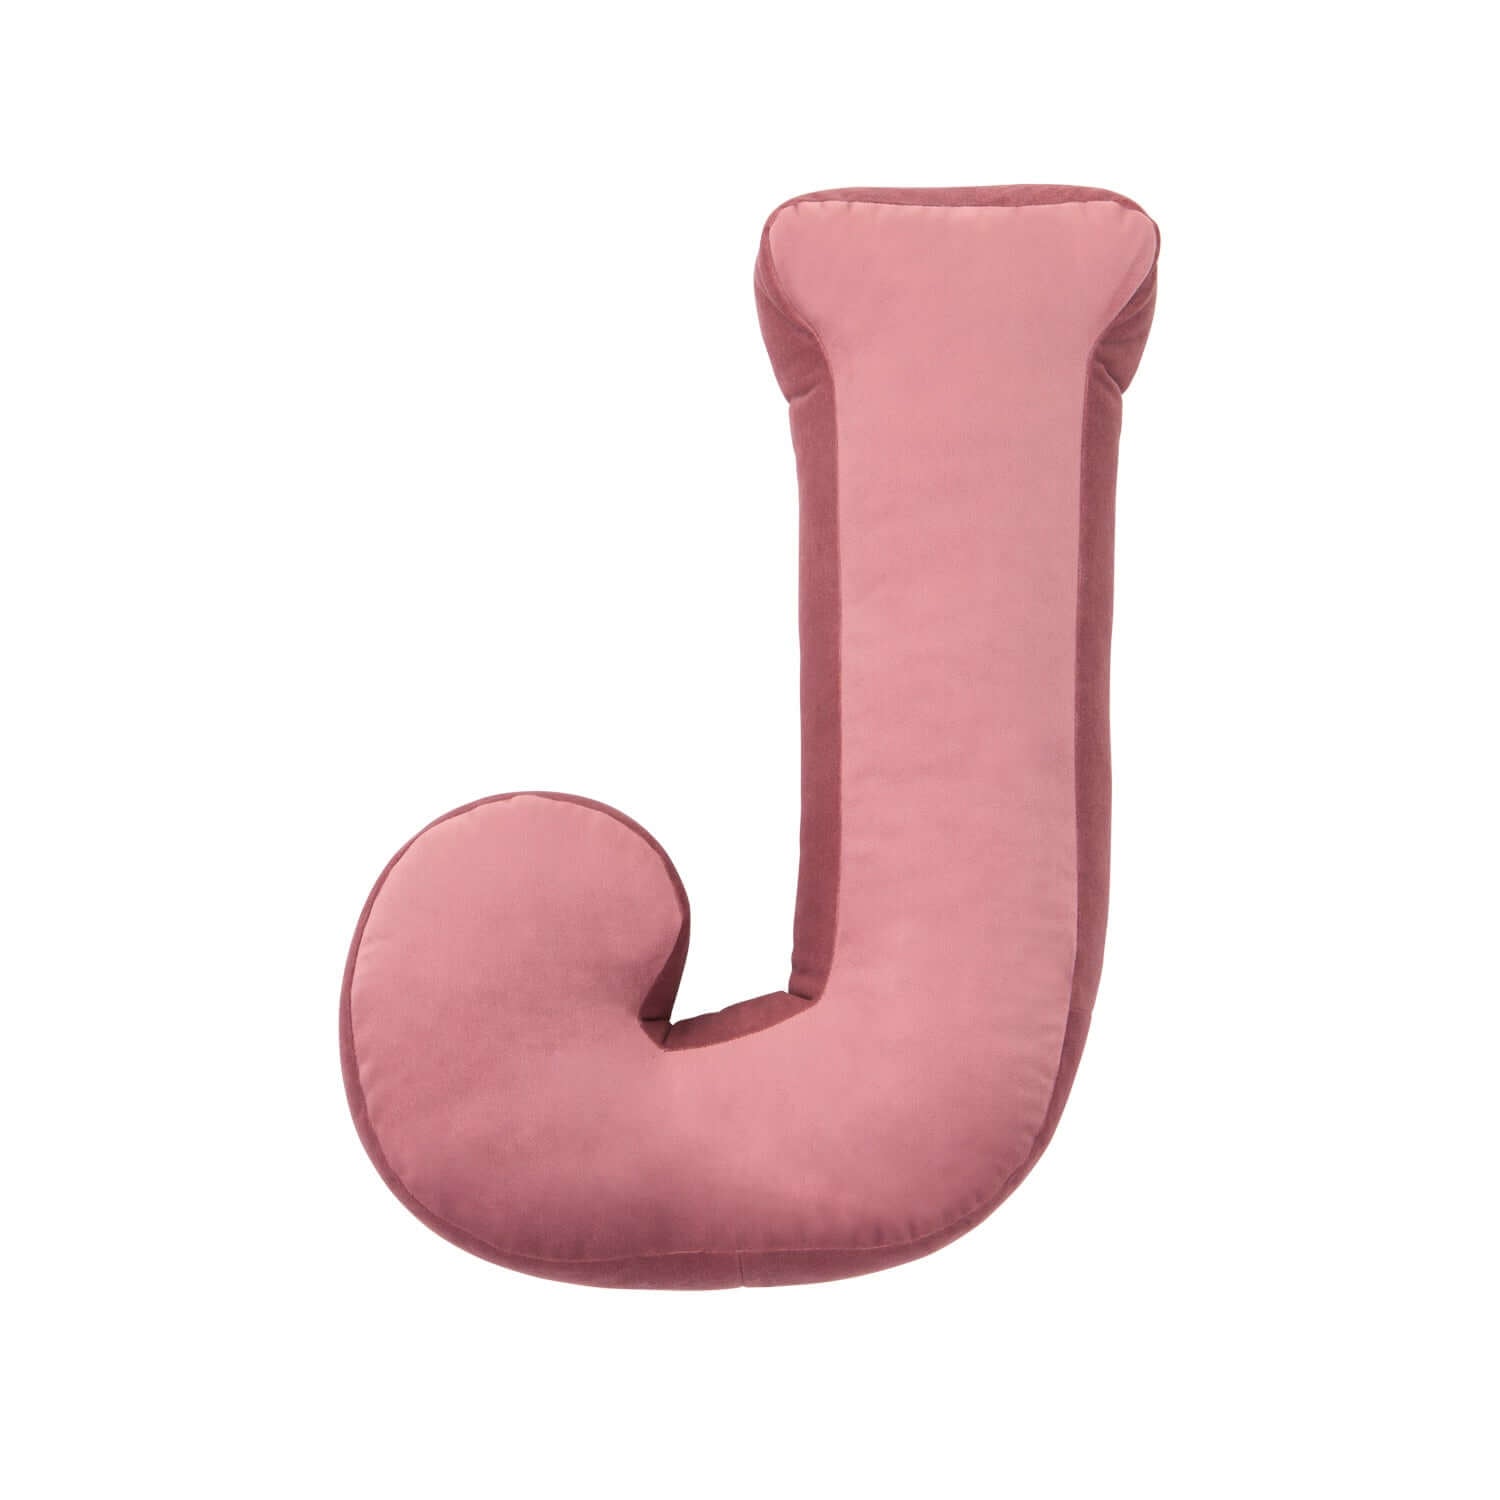 Poduszka literka welurowa J różowa od Bettys Home pomysł na prezent dla dziecka